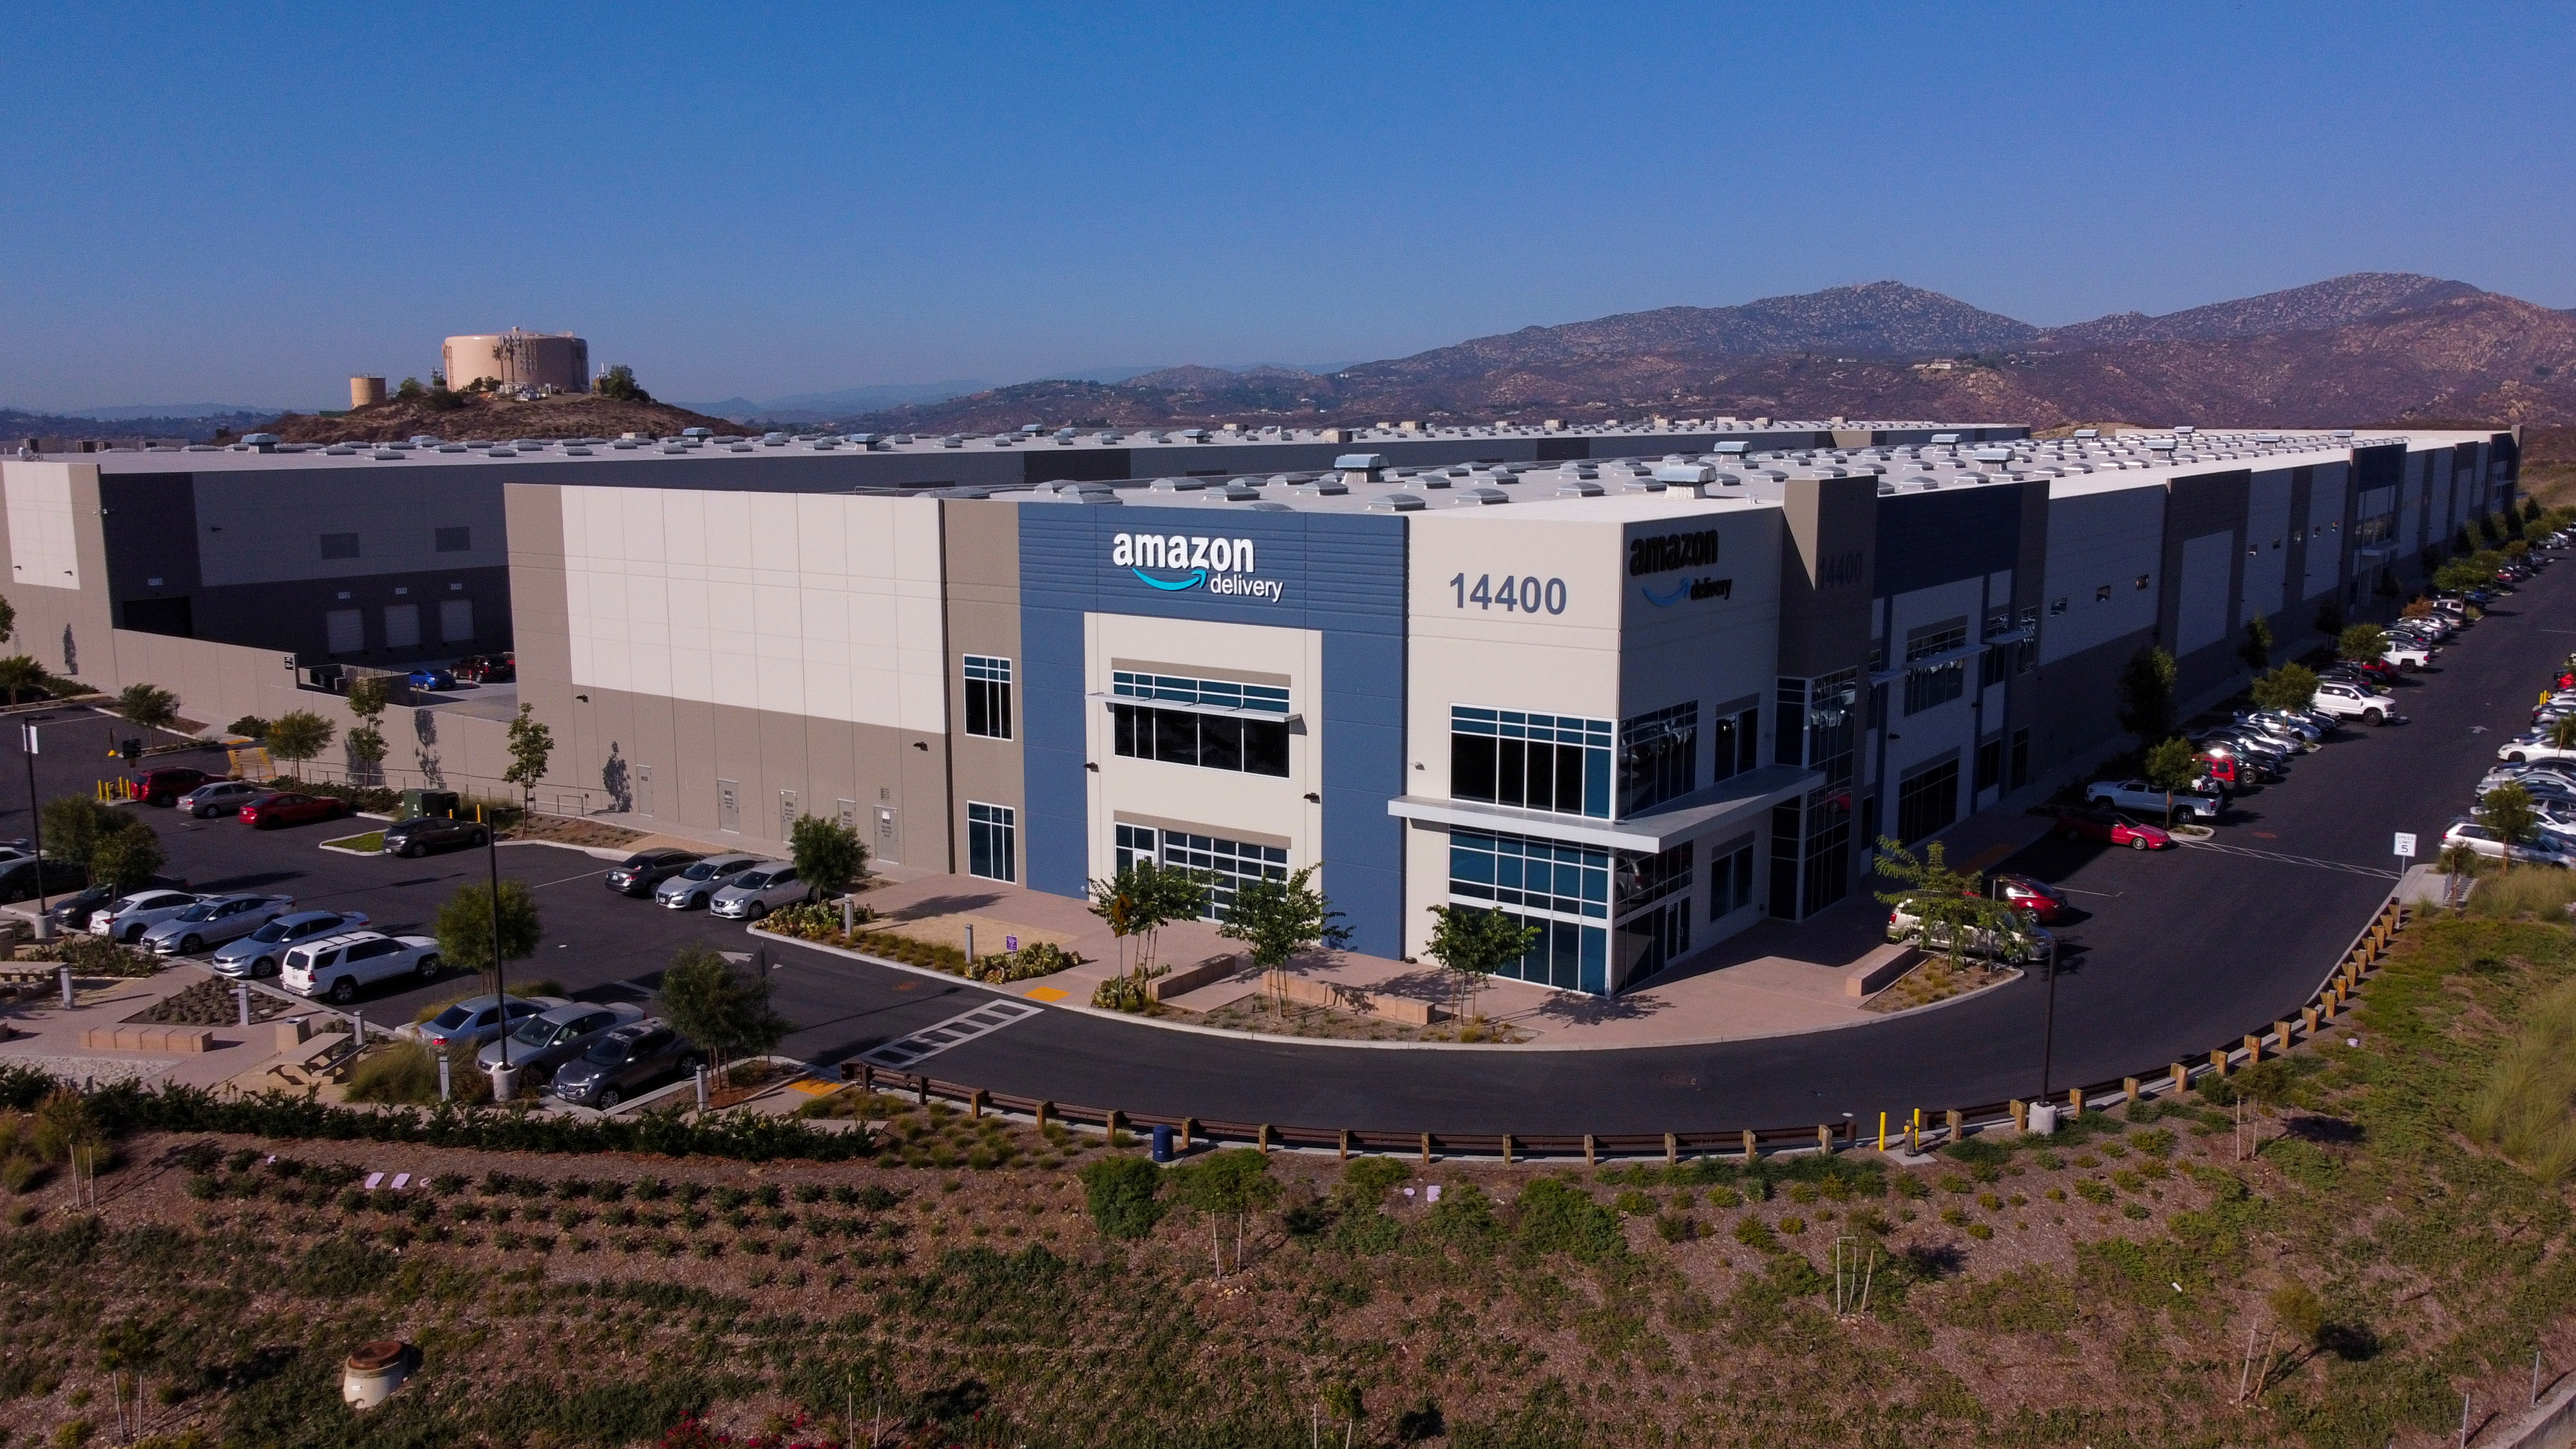 Amazon's warehouse facility ASD8 is seen in Poway, California